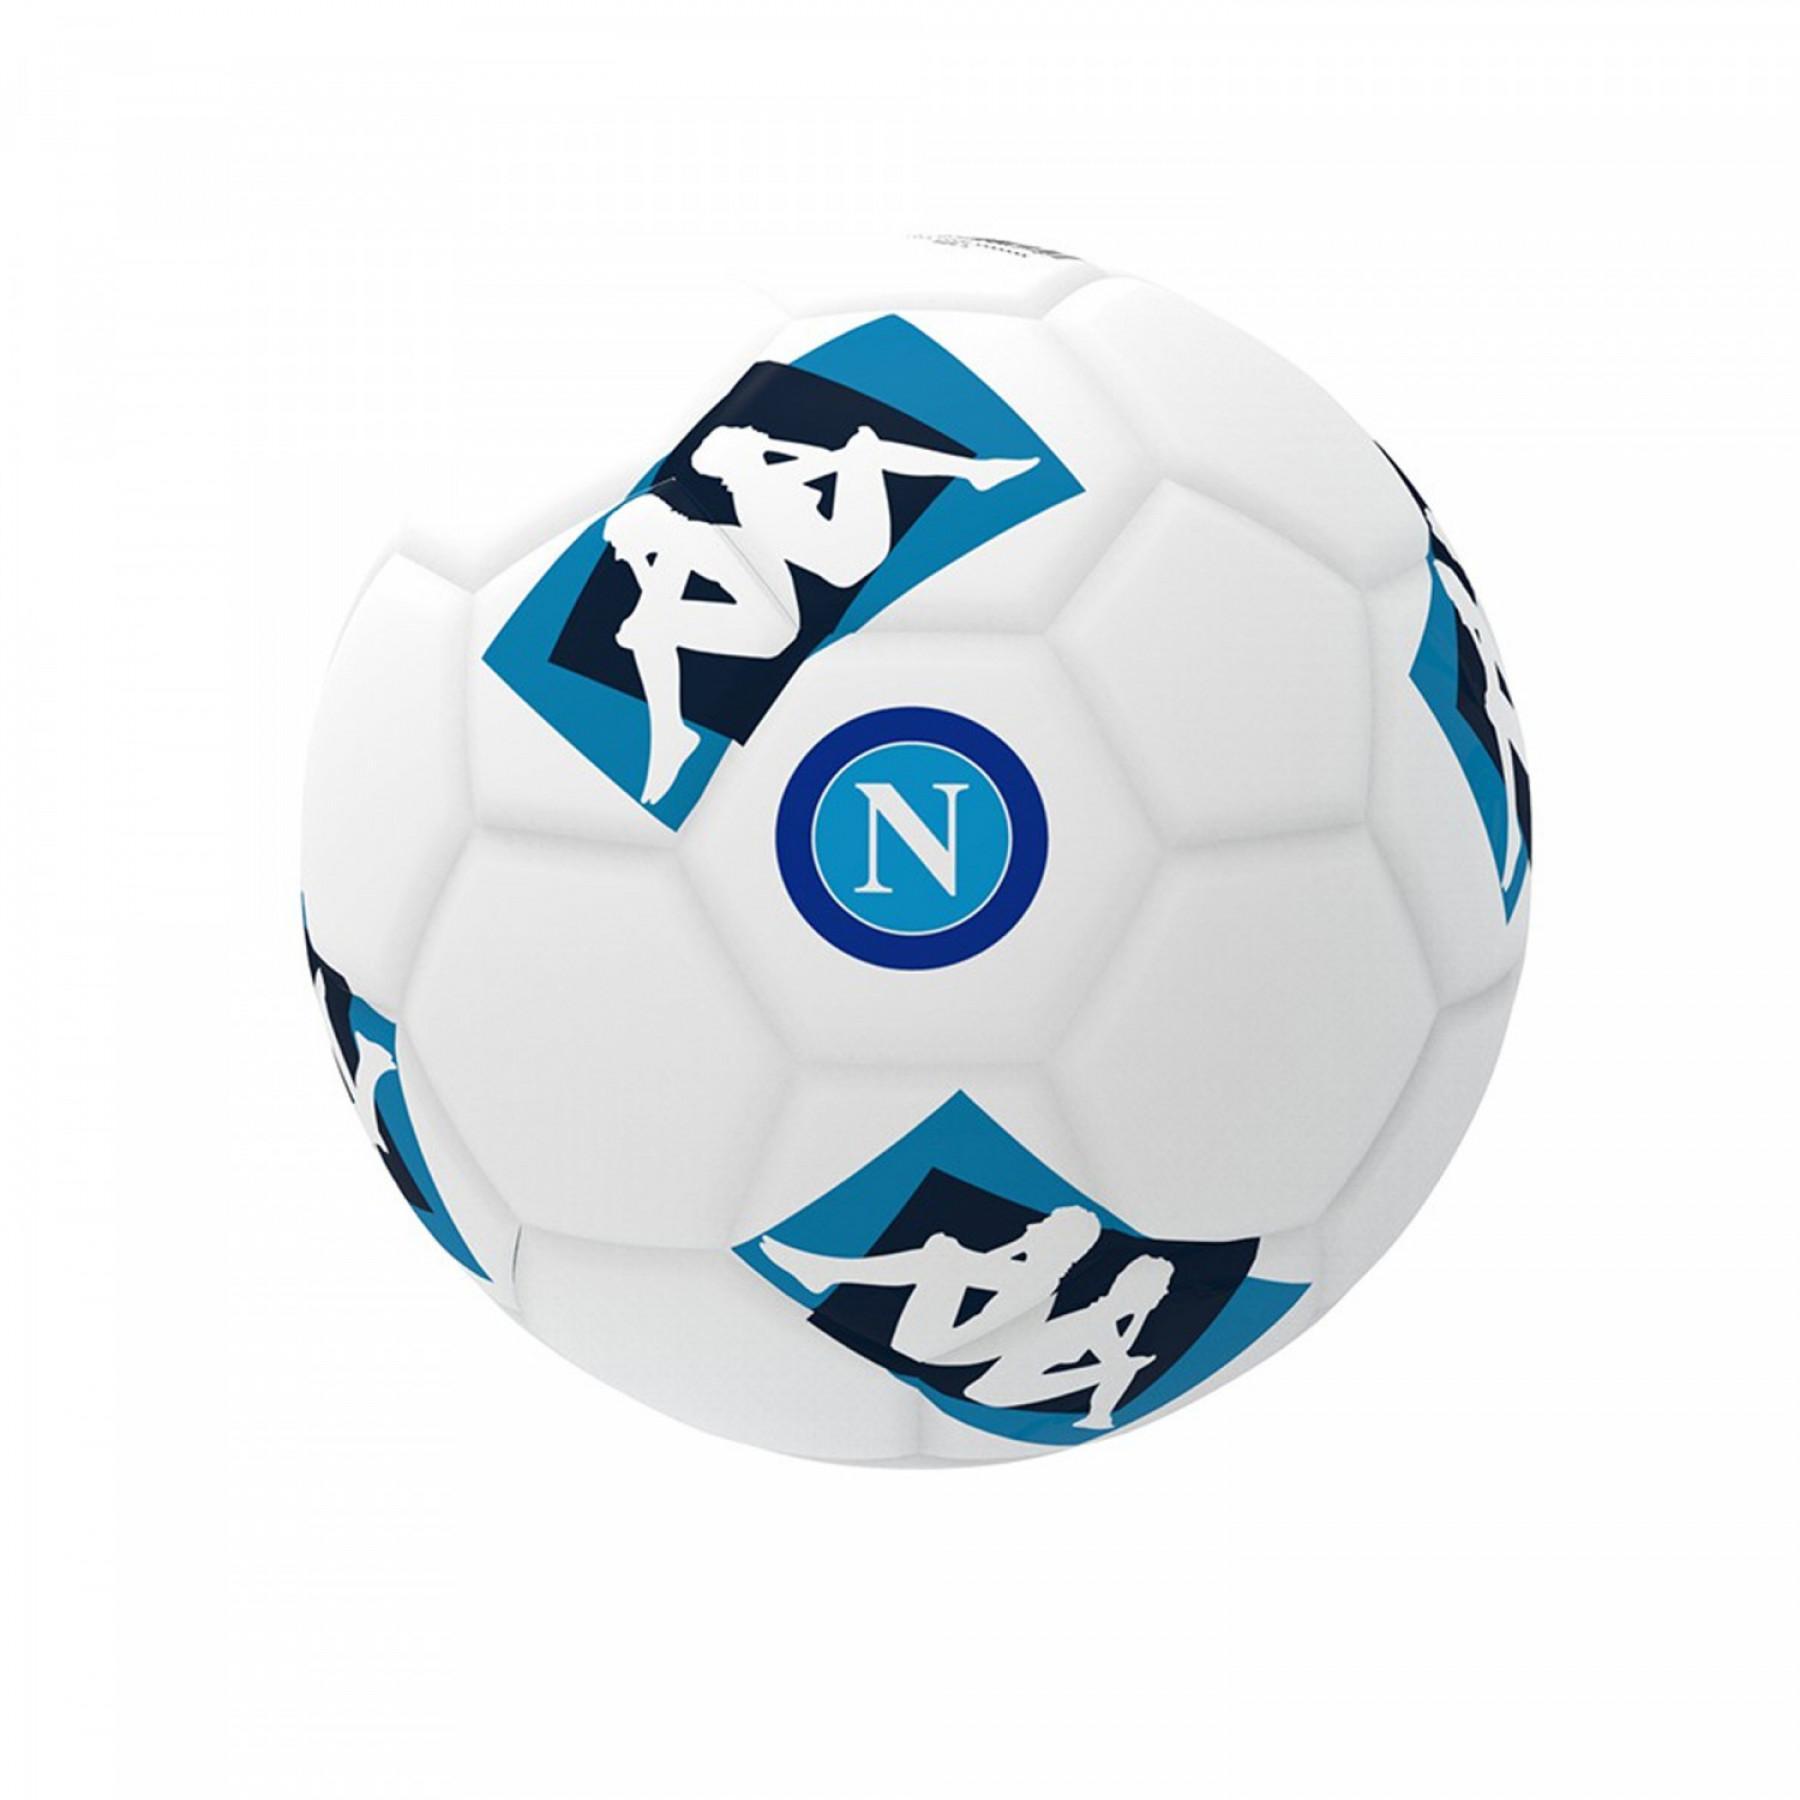 Pallone del Napoli